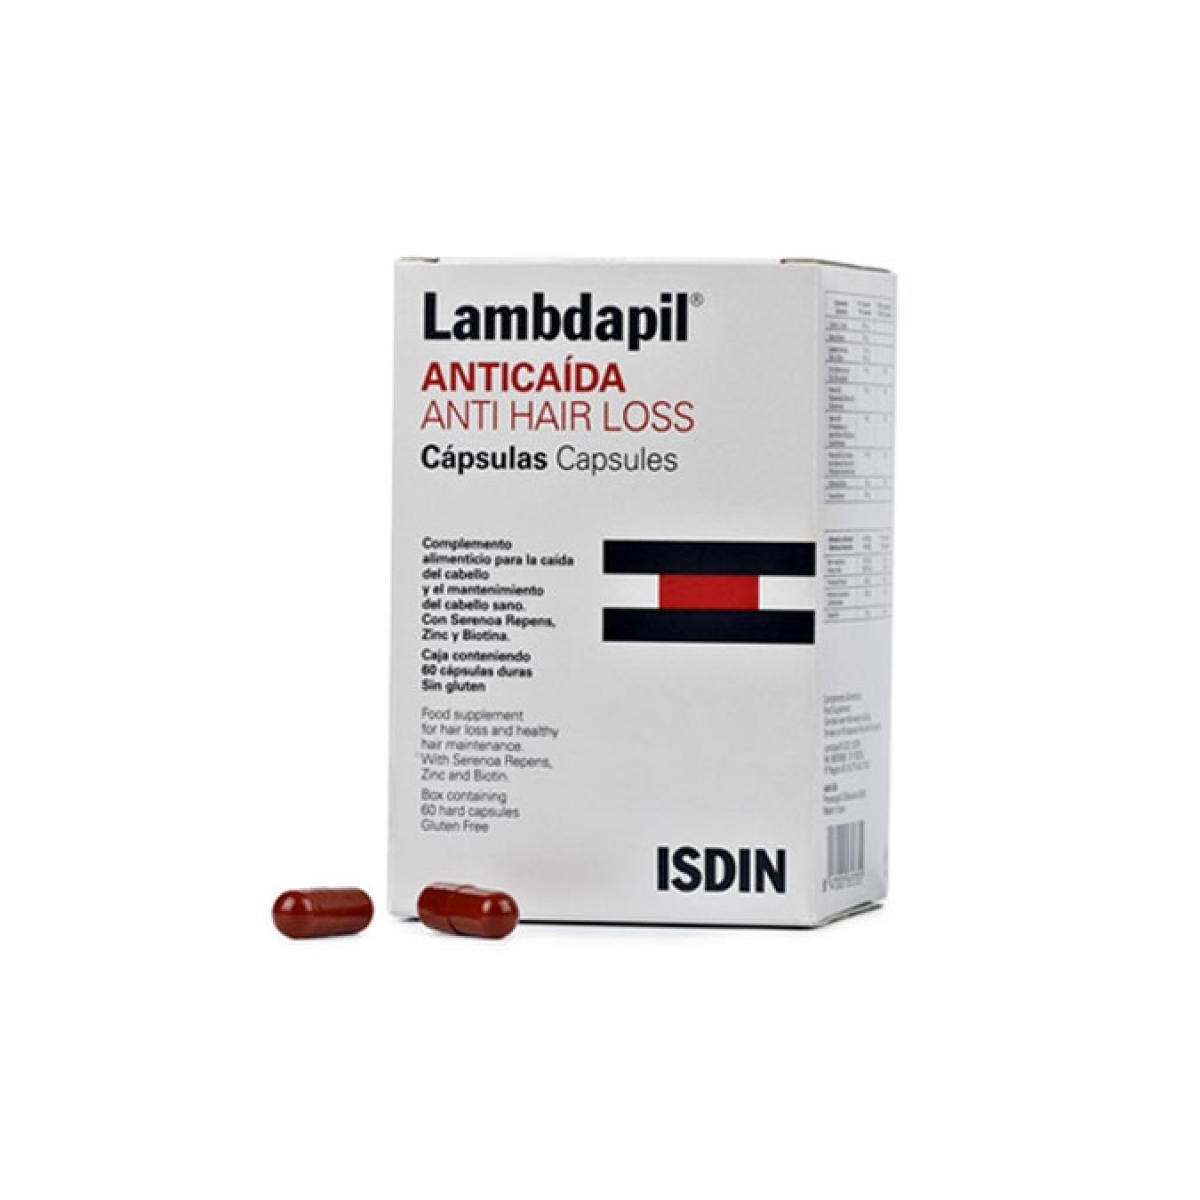 lambdapil-60-capsulas